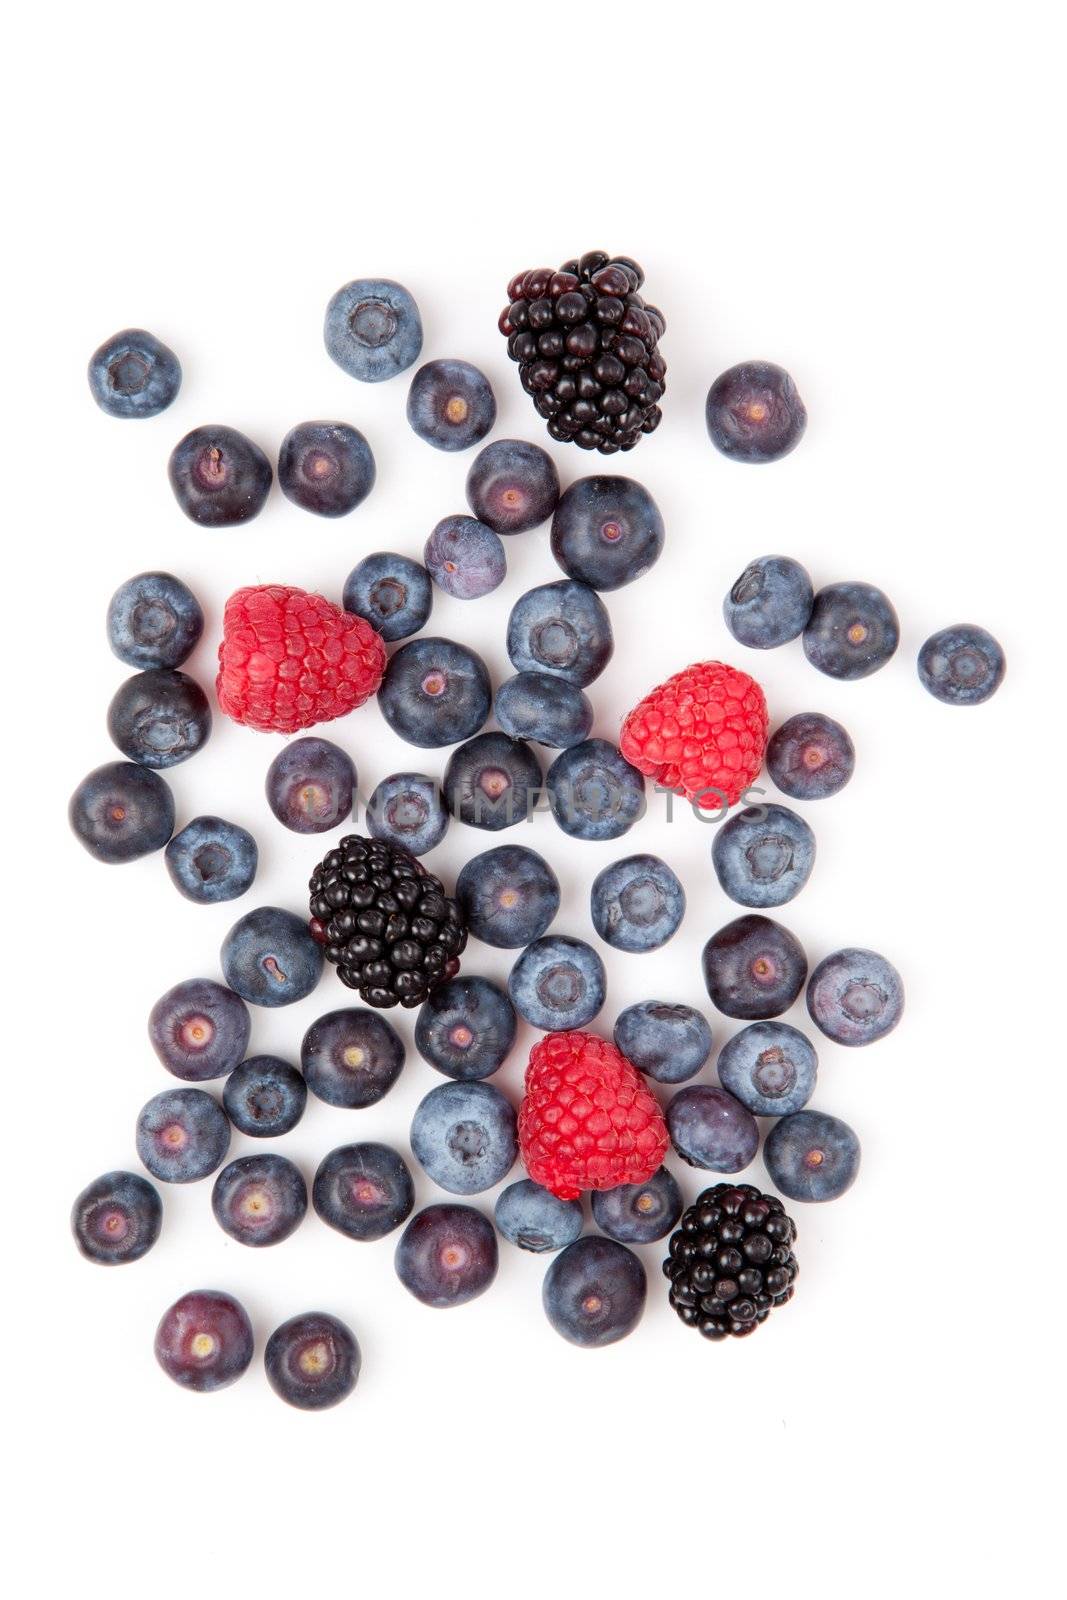 Raspberries and blueberries and blackberries by Wavebreakmedia